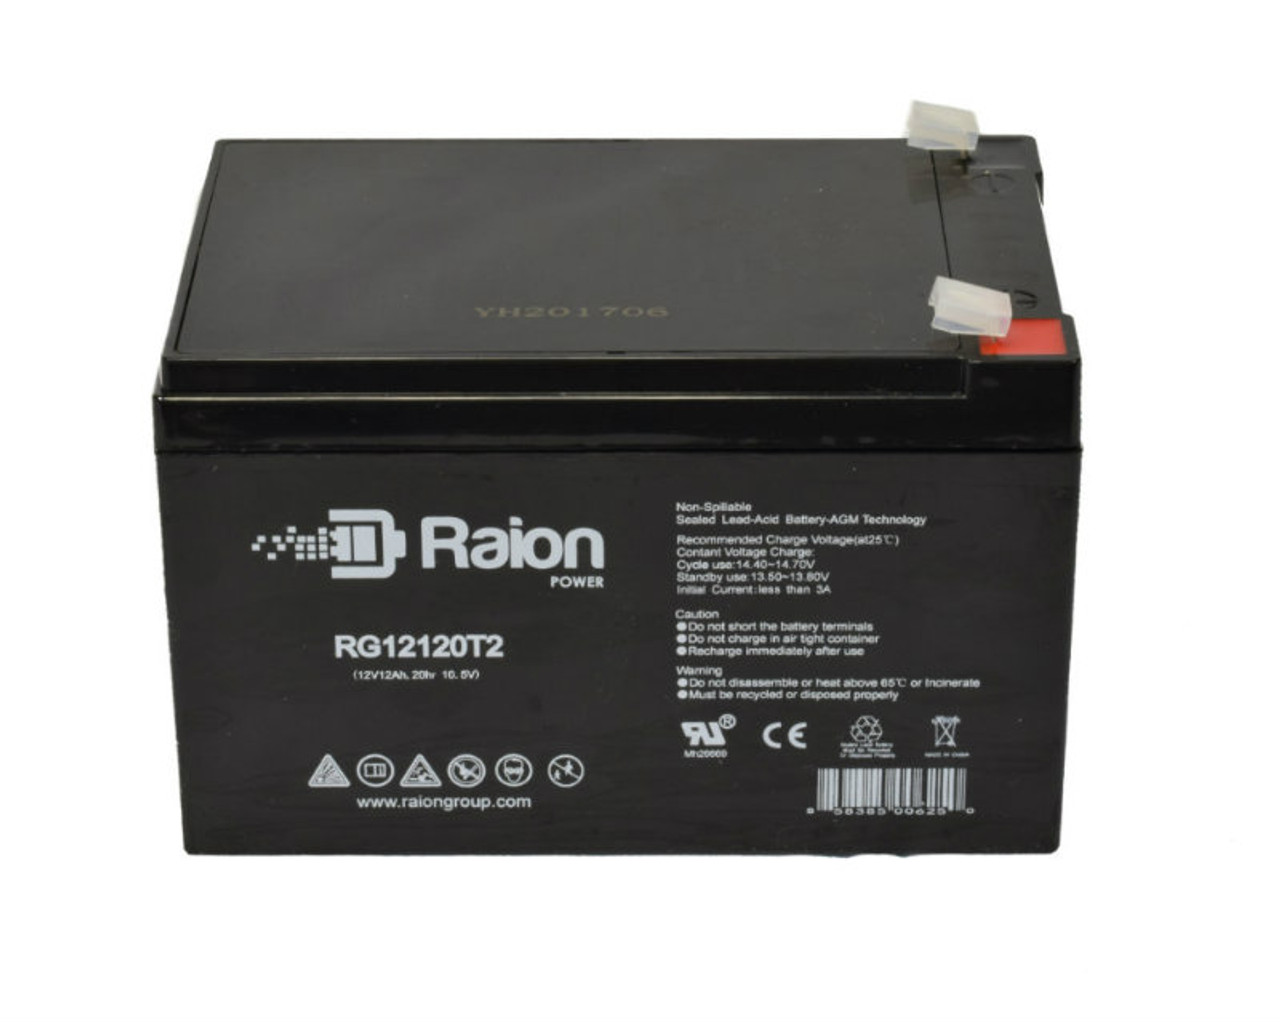 Raion Power RG12120T2 SLA Battery for Sonnenschein 2145139800